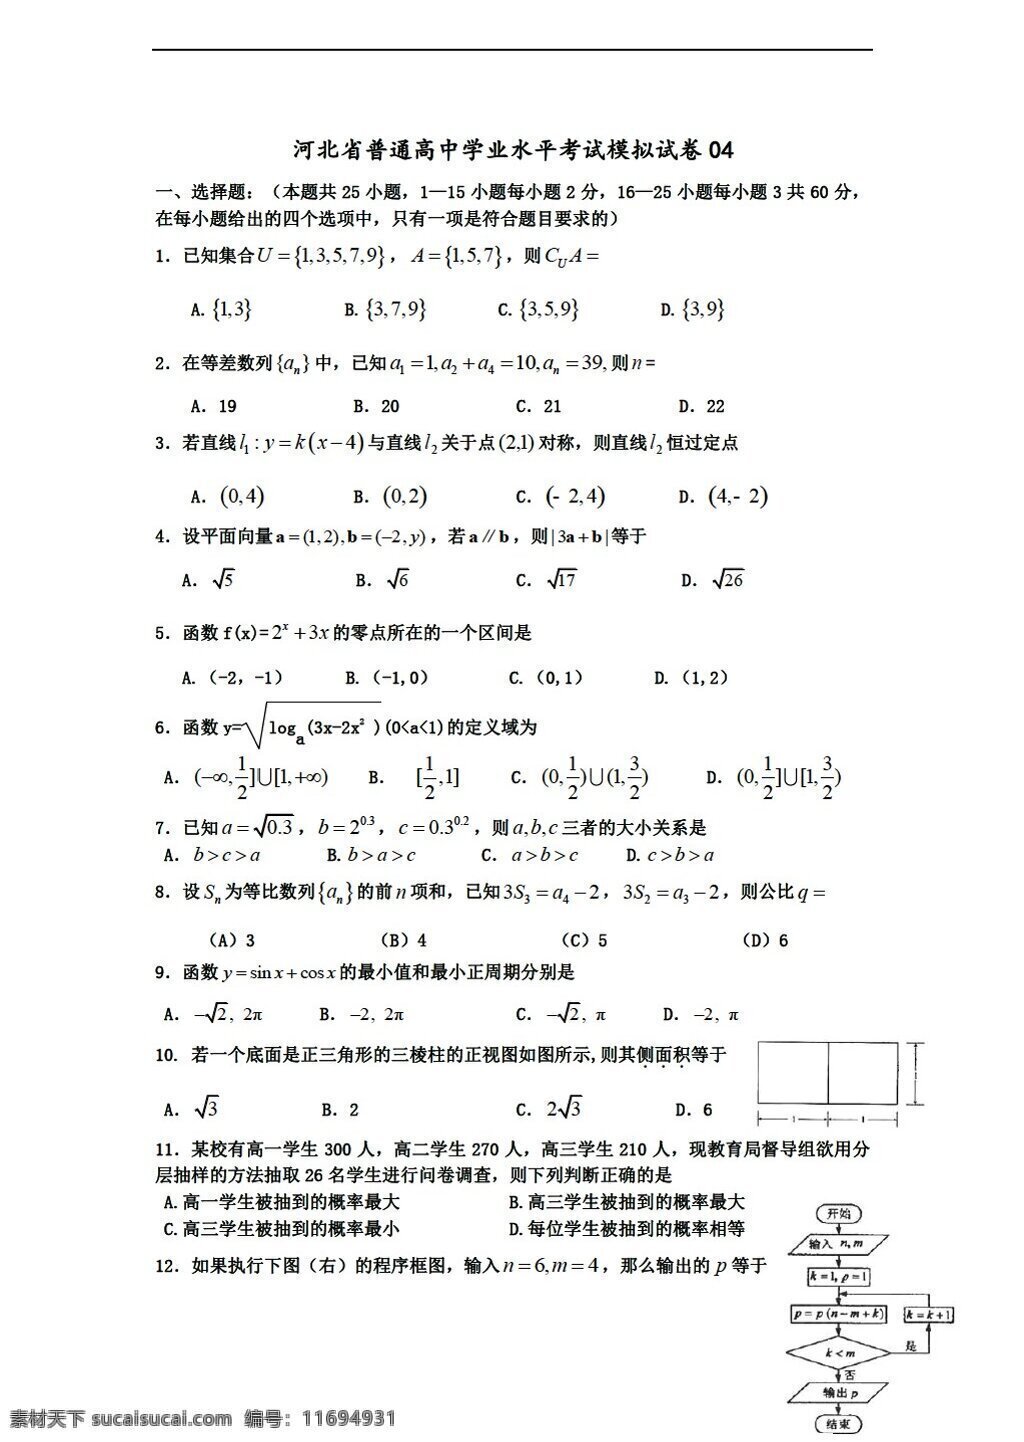 数学 会考 专区 河北省 普通 学业 水平考试 模拟试卷 会考专区 试卷